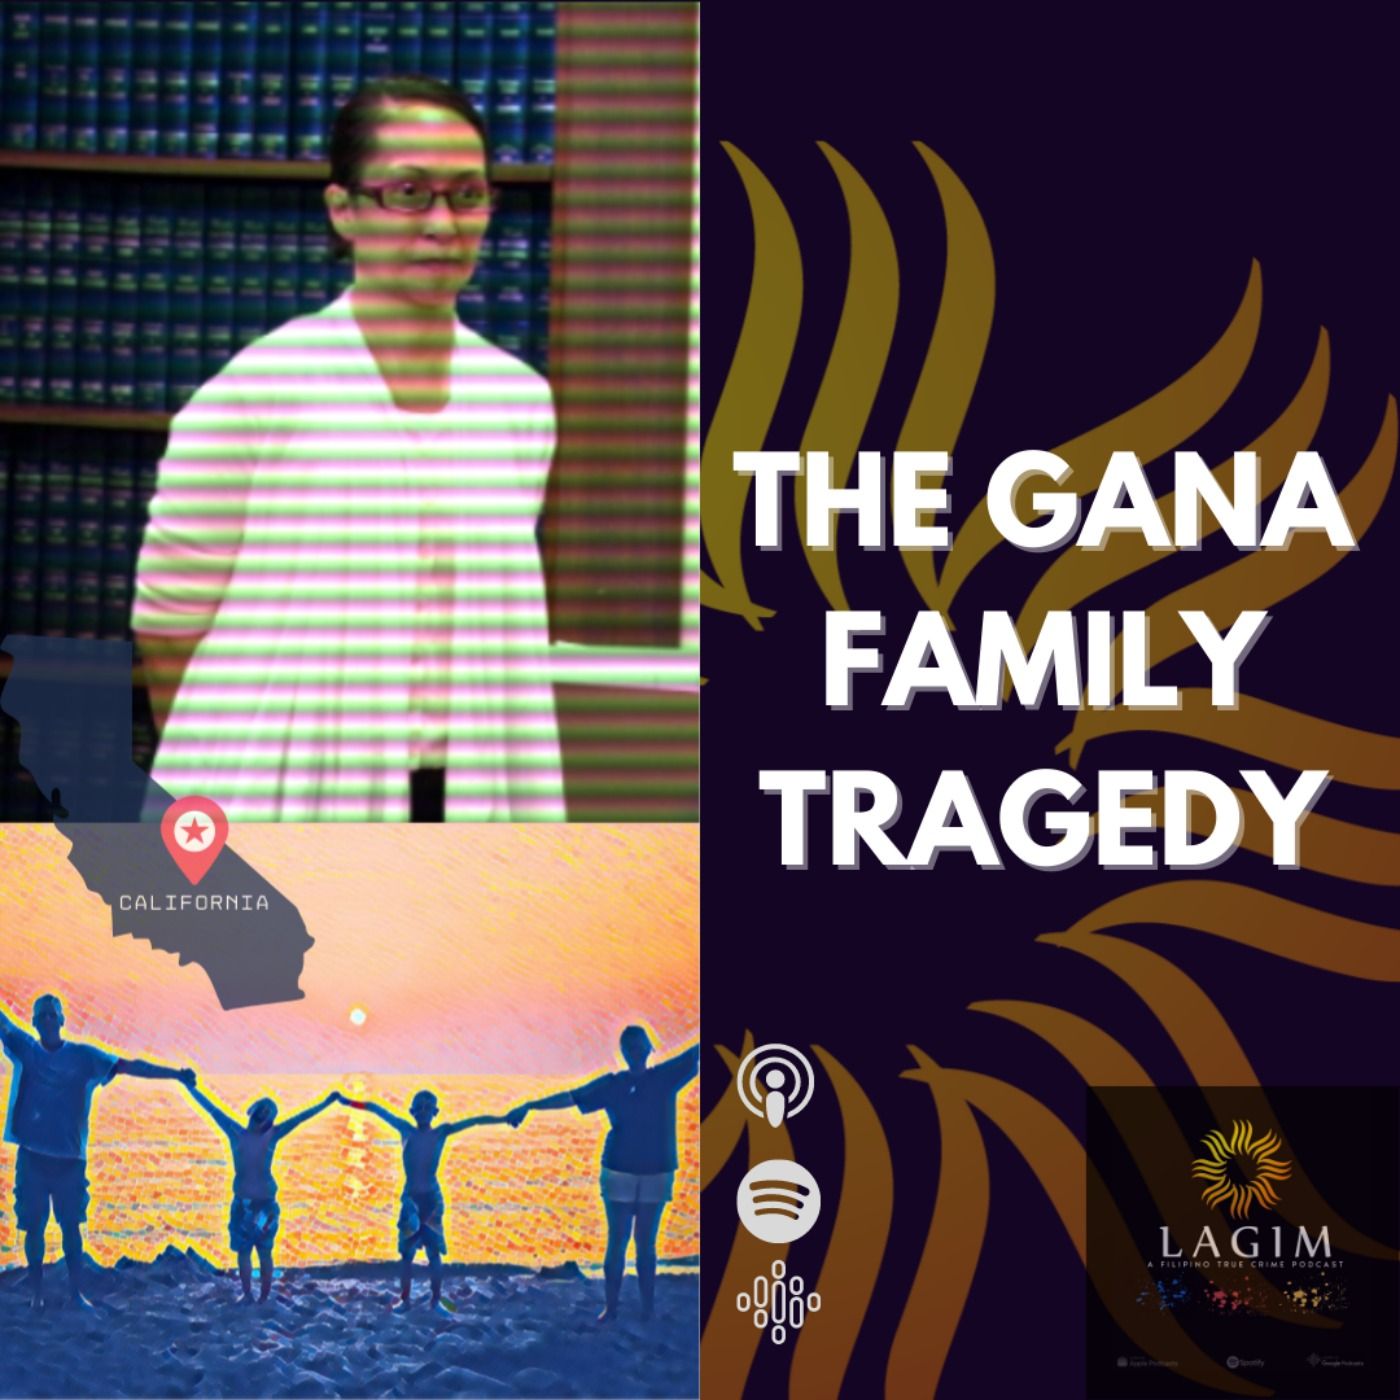 The Gana Family Tragedy